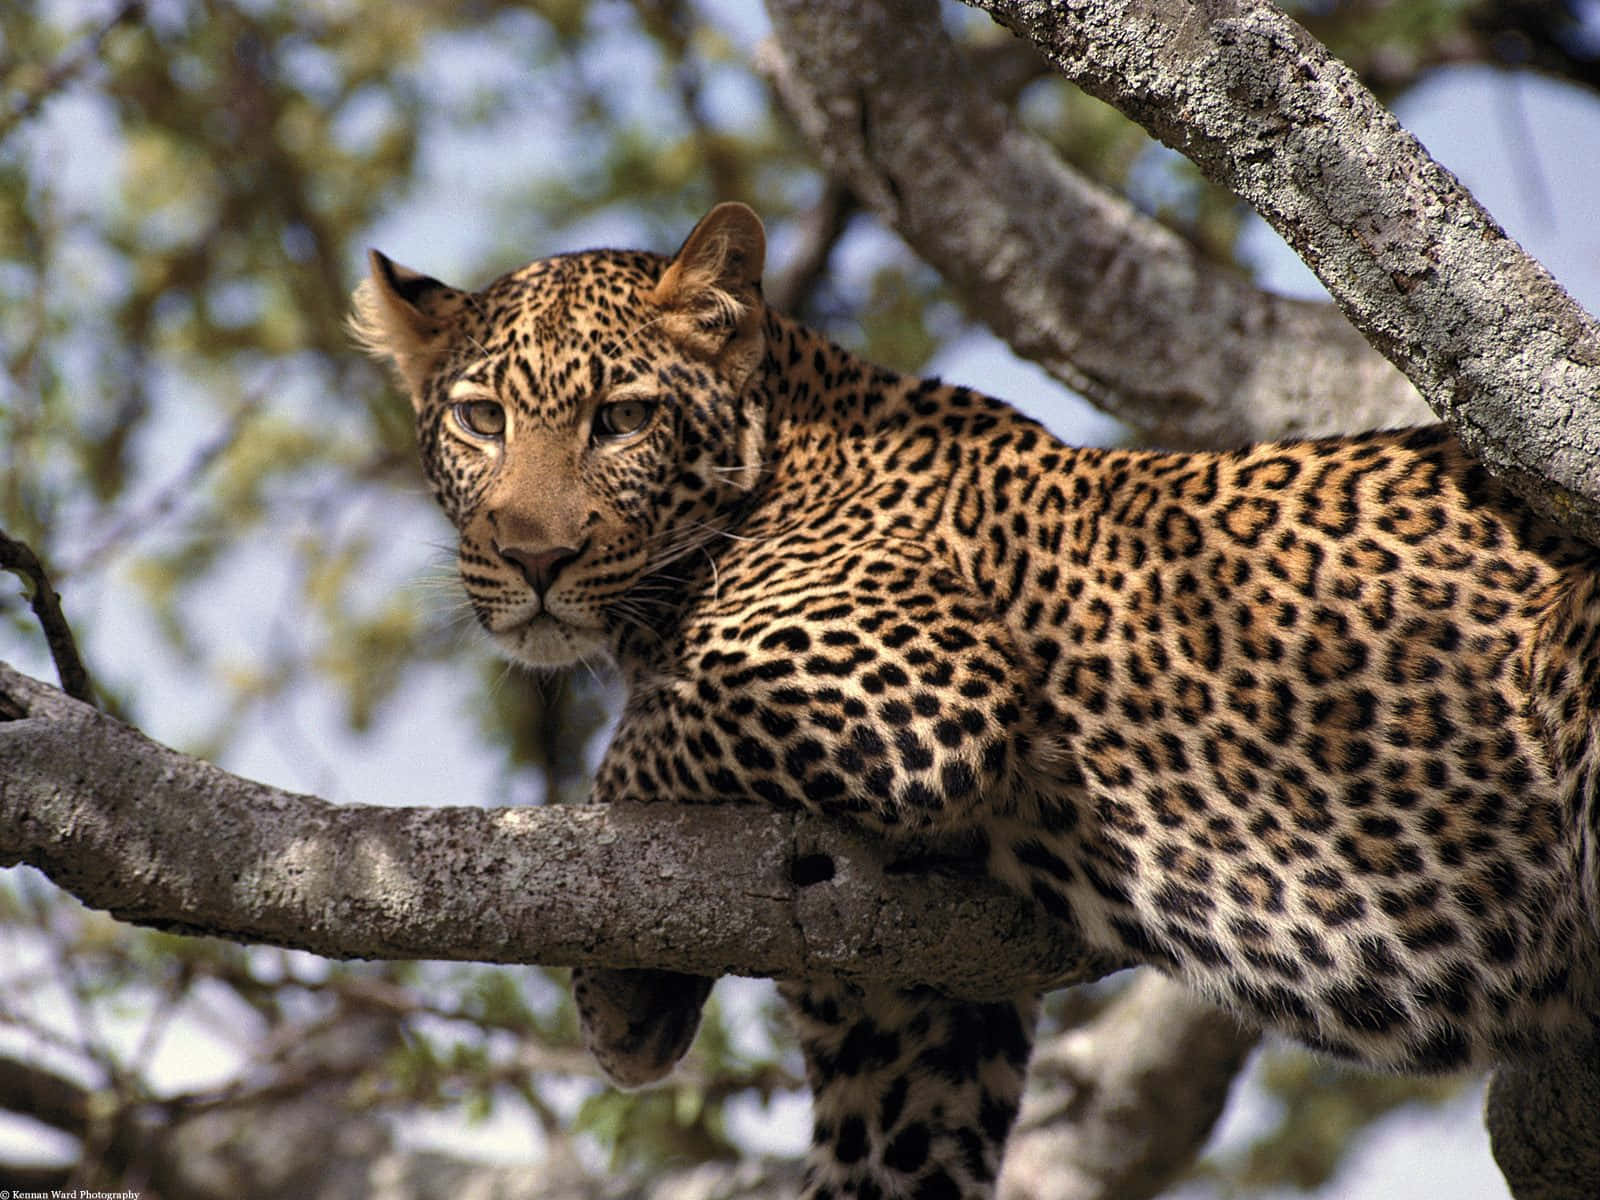 Imagende Un Leopardo En Una Delgada Rama De Árbol, Animales Salvajes.